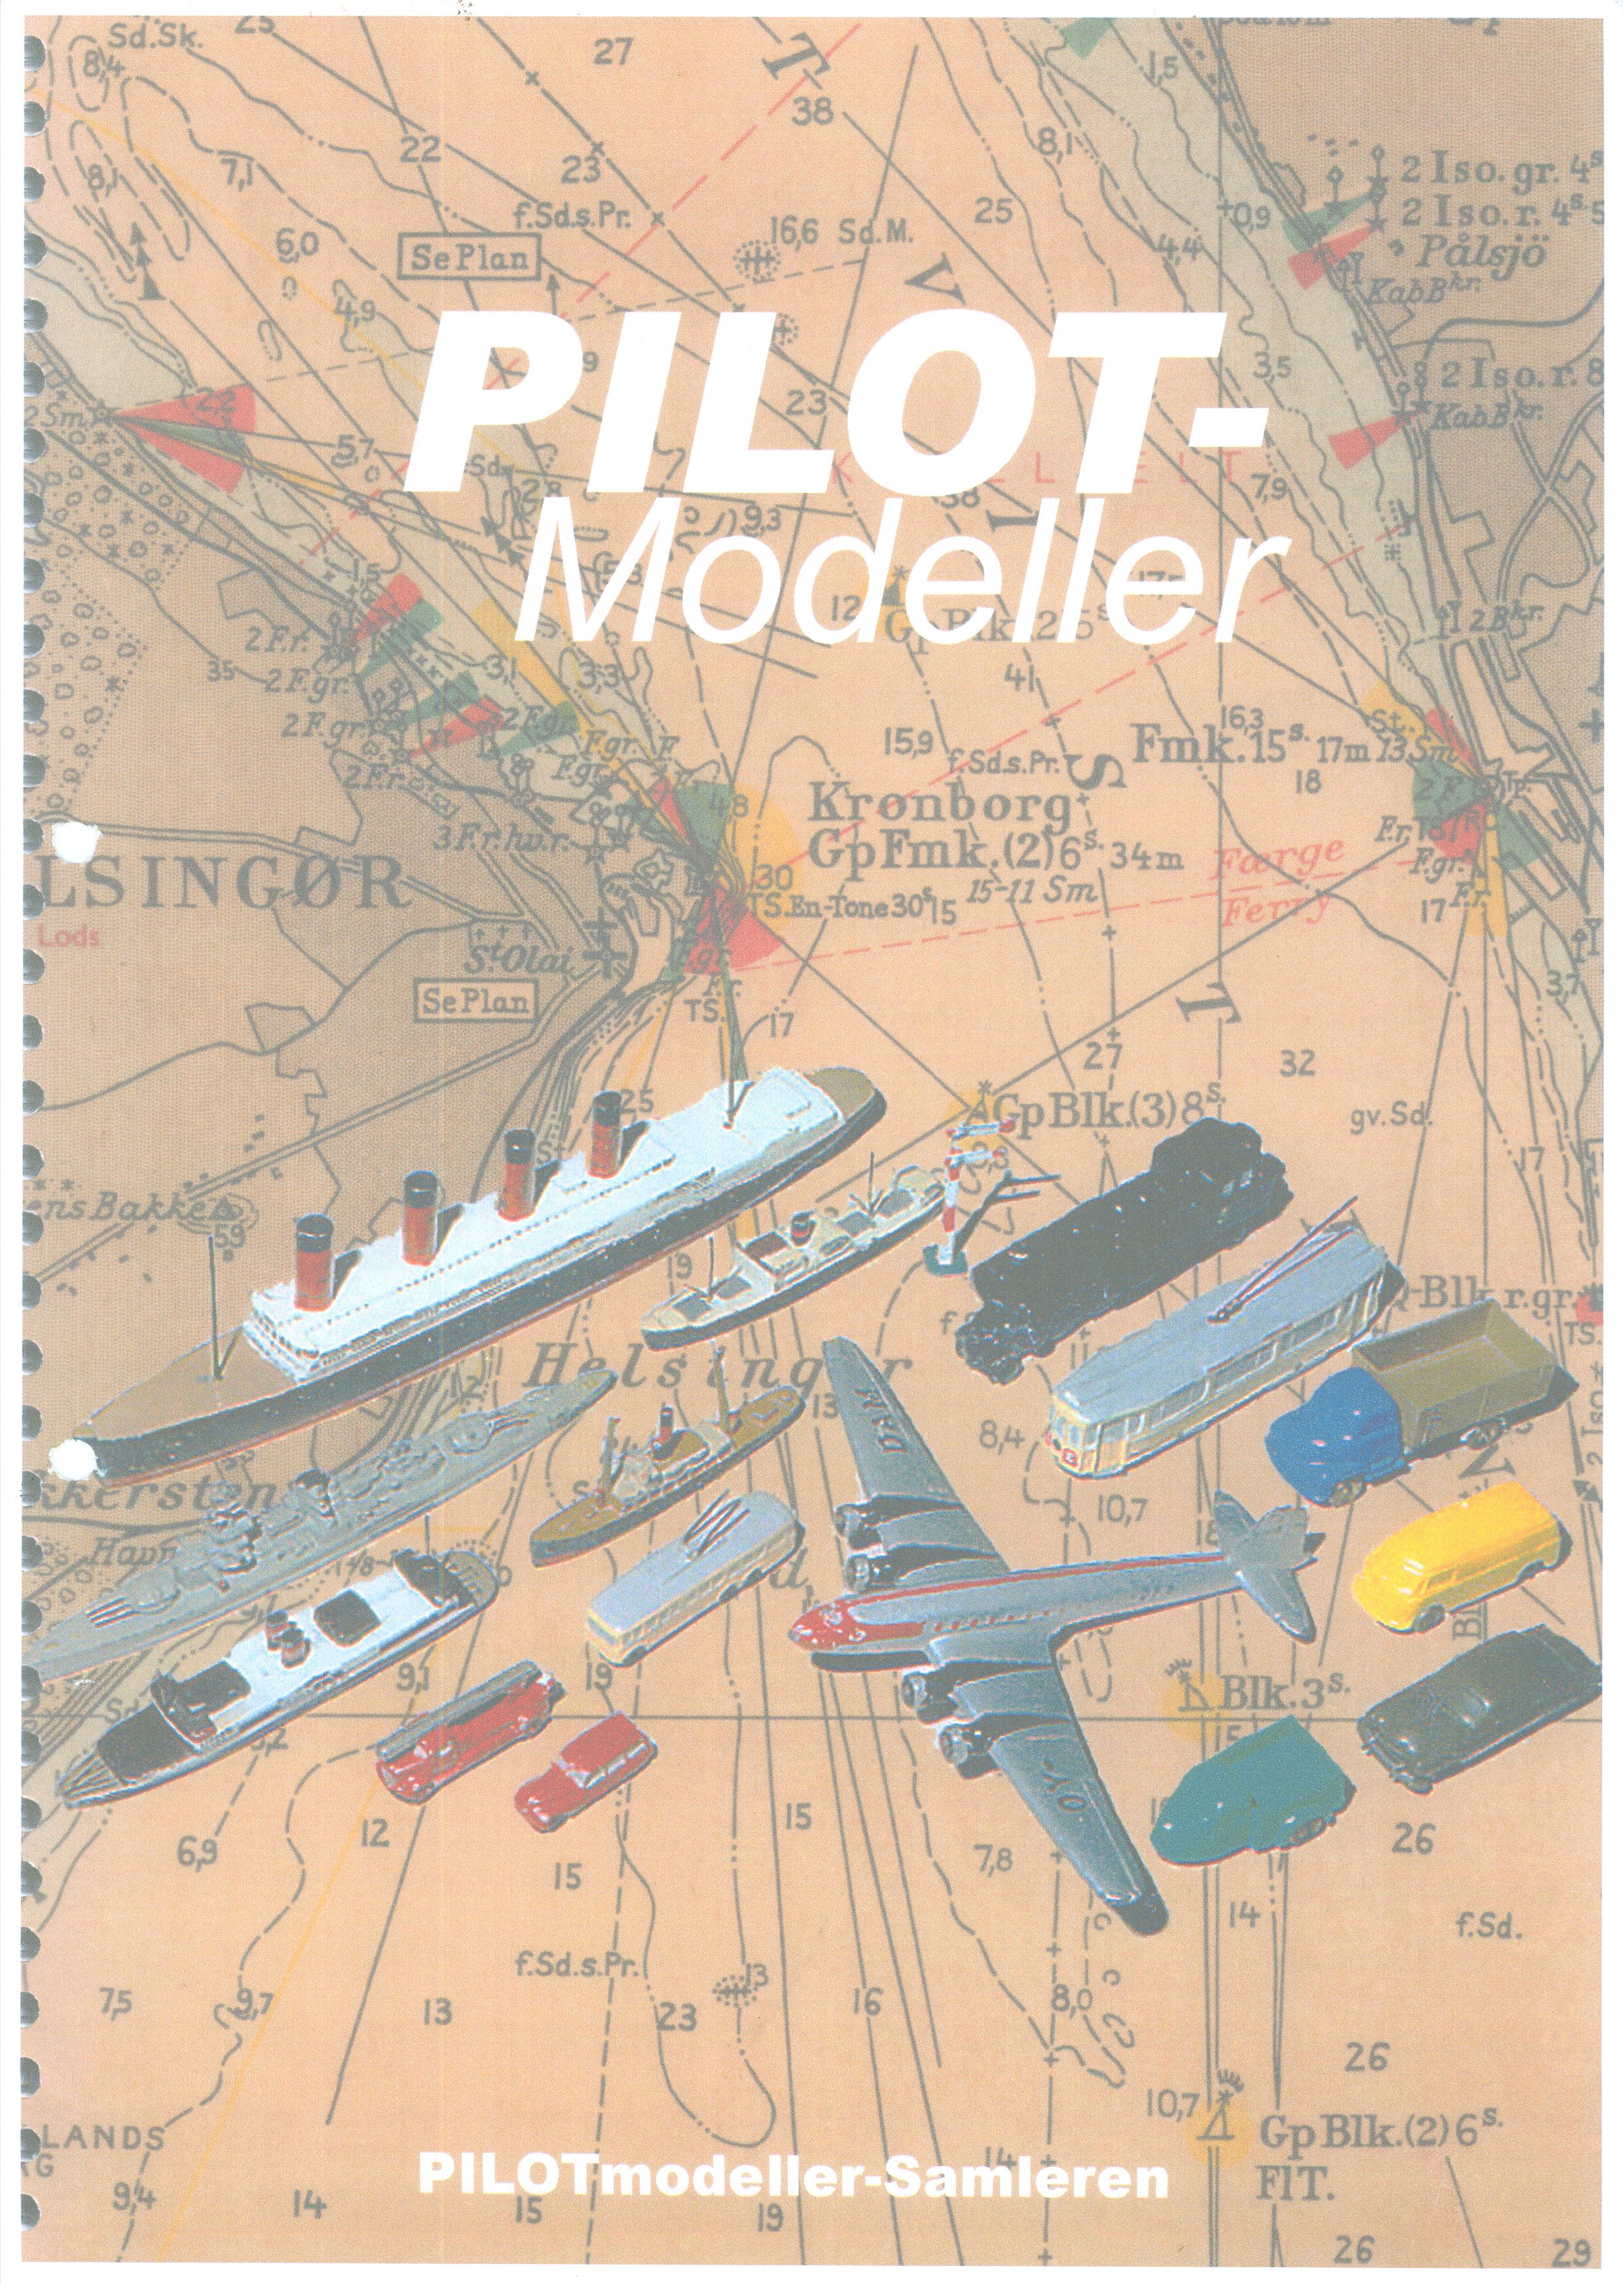 PILOT Modeller01.jpg